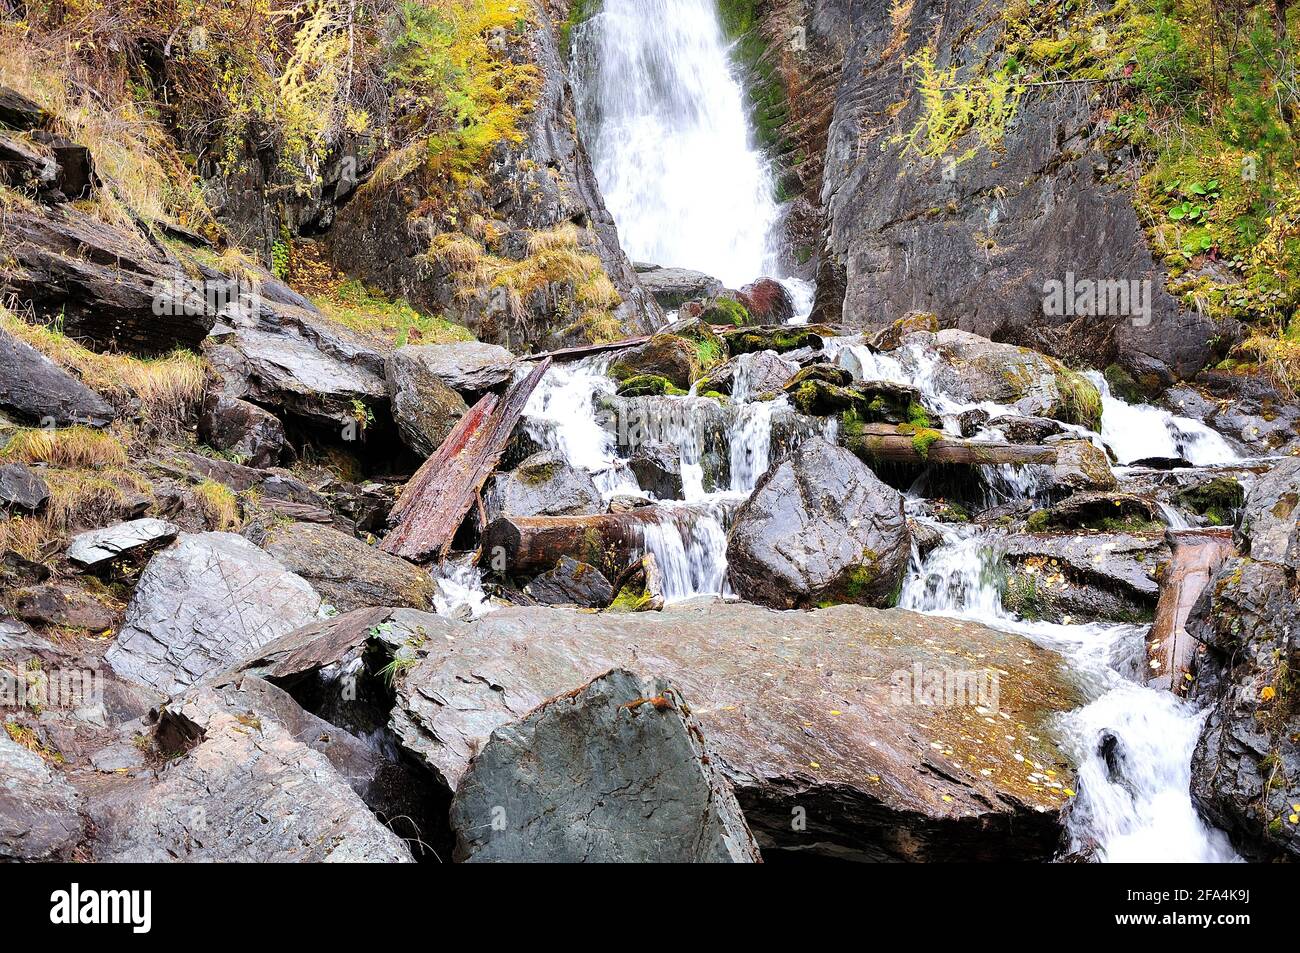 Un ruisseau orageux descendant des montagnes à travers la forêt d'automne, à travers des rochers de pierre et des troncs d'arbres à refus. Rivière Boki, Altaï, Sibérie, Banque D'Images